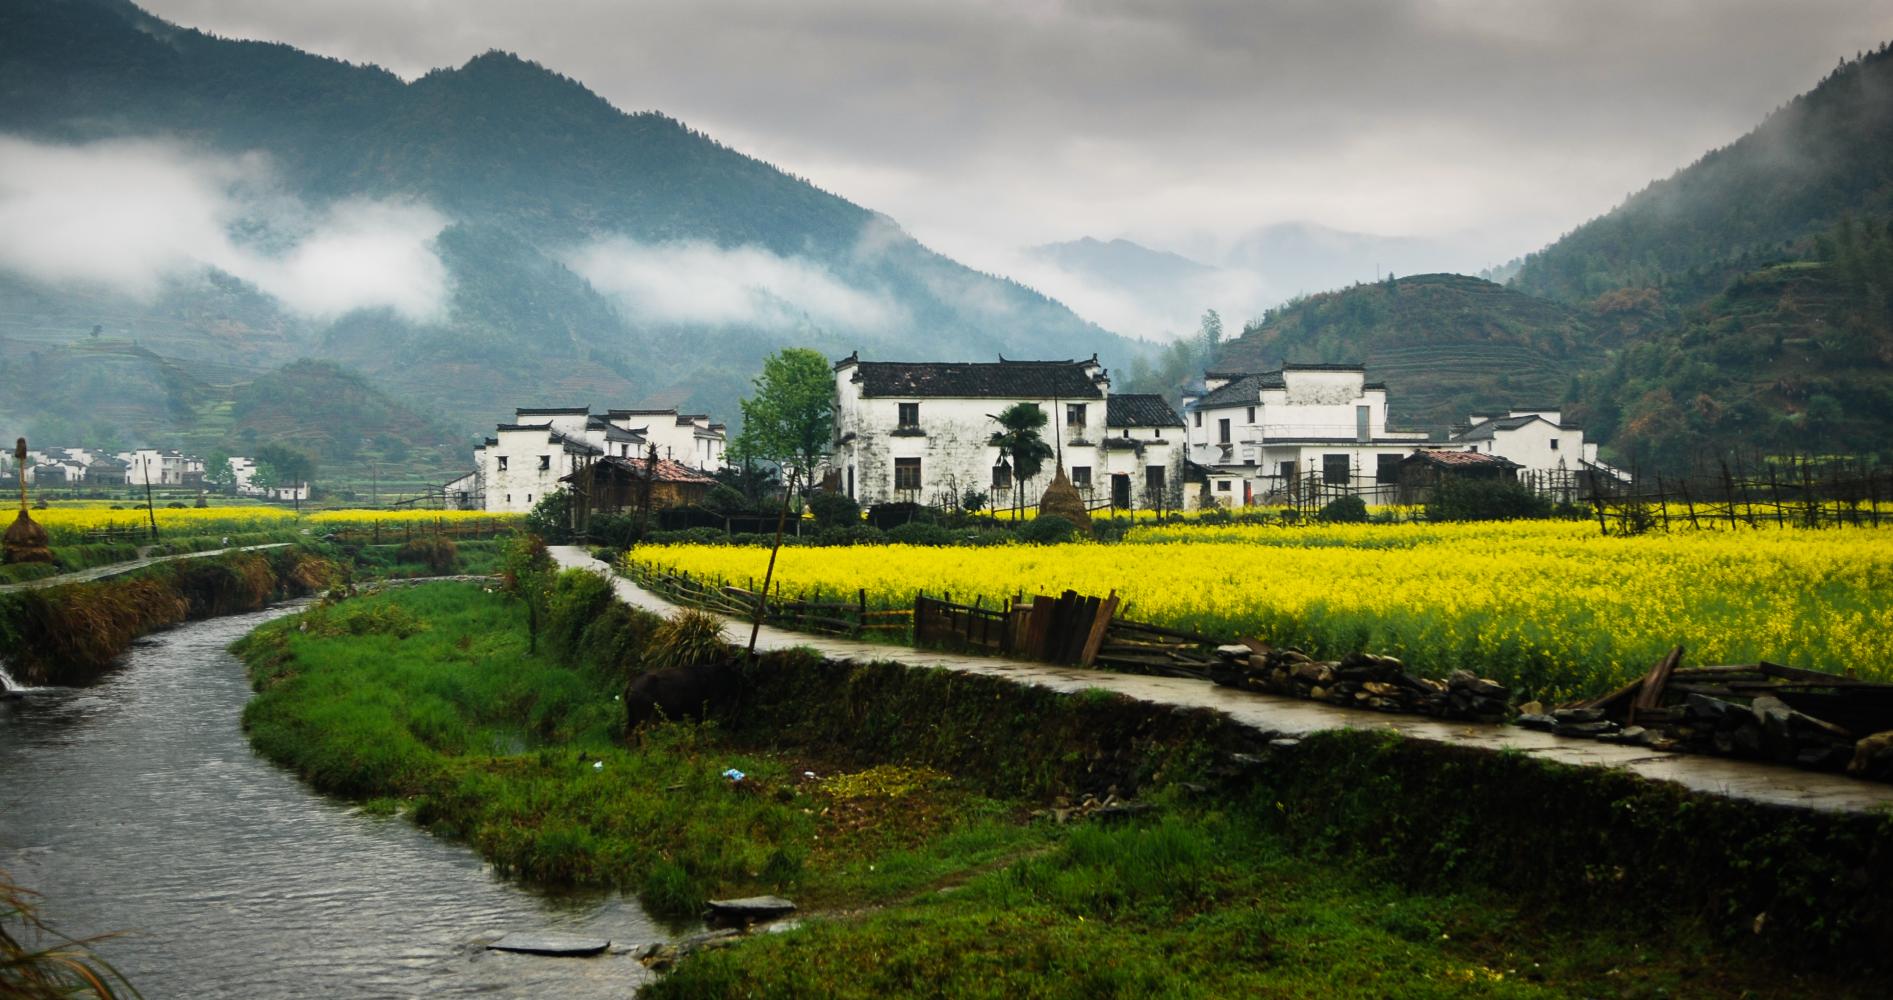 也是徽文化的发祥地之一,素有"书乡""茶乡"之称,被誉为"中国最美乡村"